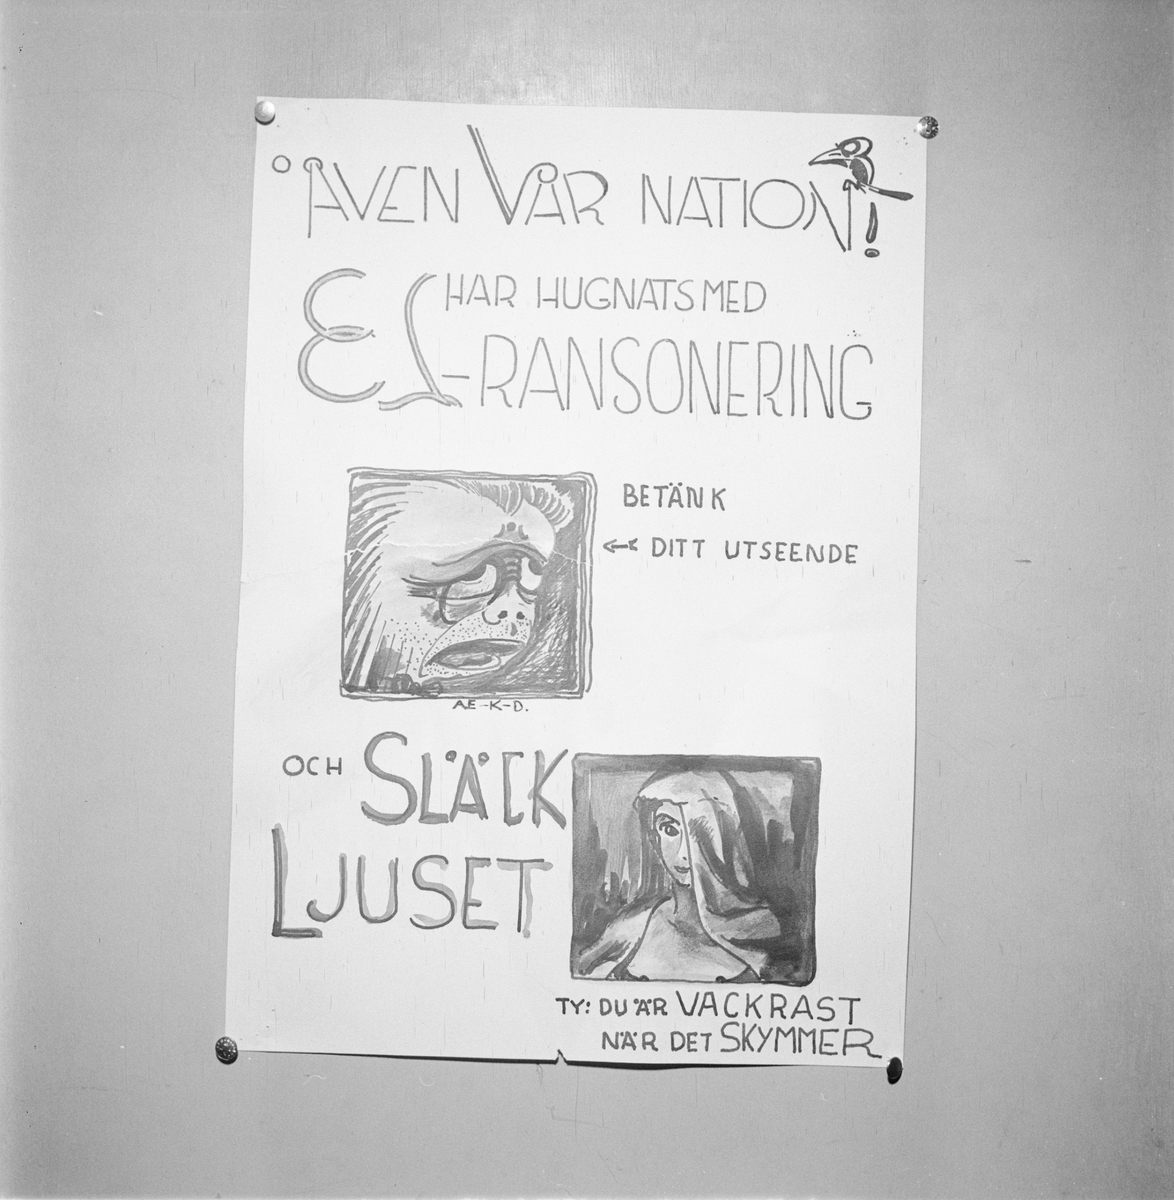 Värmlands nation, affisch om elransonering, Uppsala